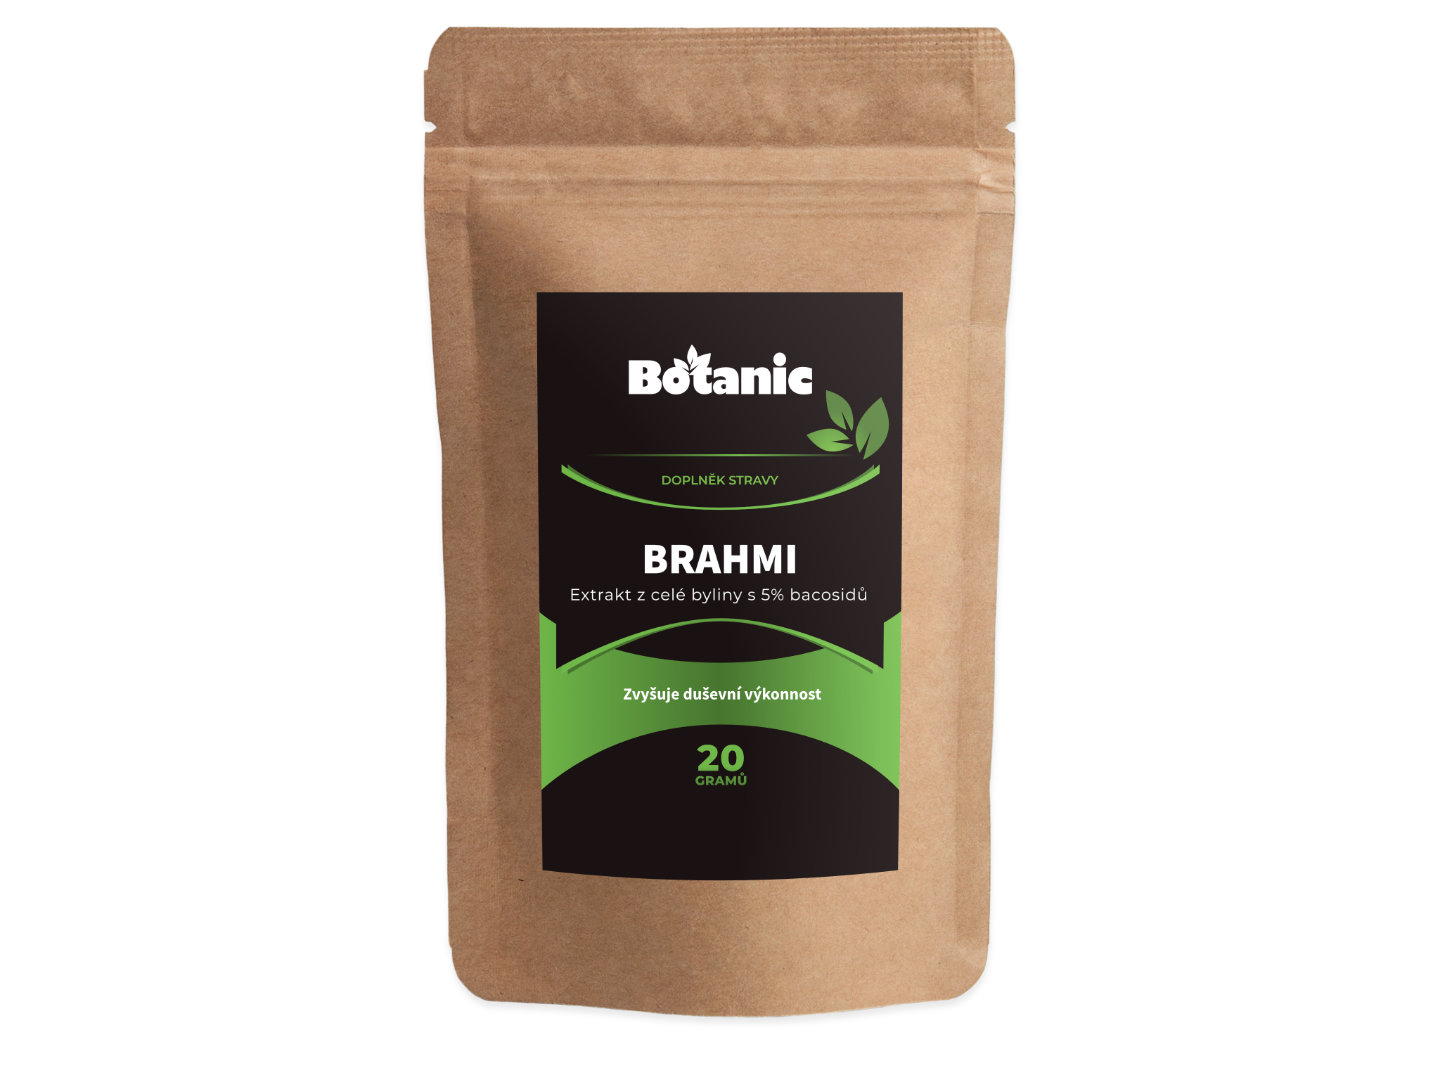 Botanic Brahmi - Extrakt z celé byliny s 5% bacosidů v prášku 20g